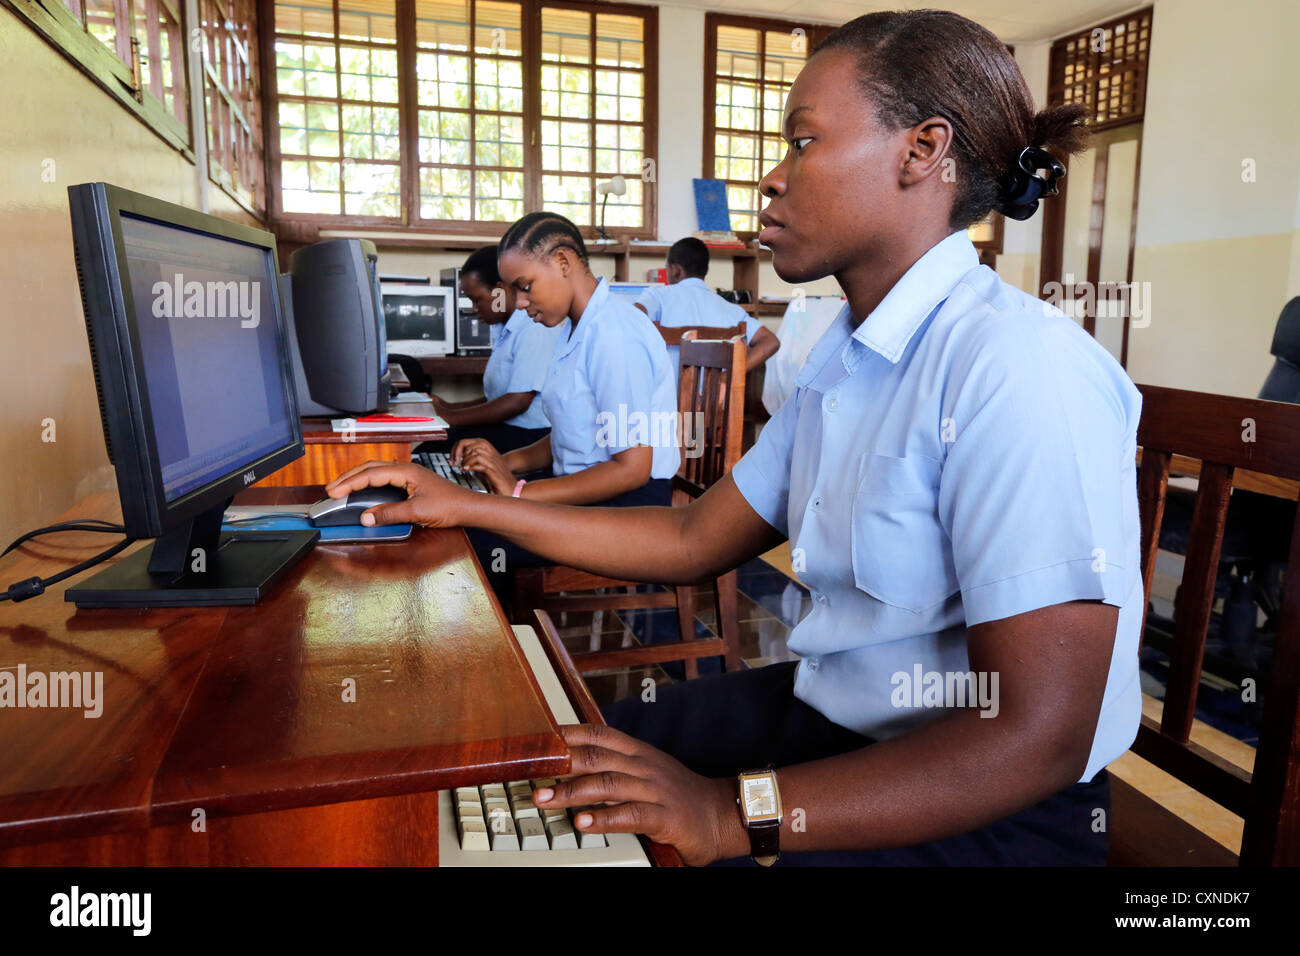 Les étudiants au cours de leçon d'informatique dans le centre de formation professionnelle, Machui Machui, Zanzibar, Tanzanie Banque D'Images